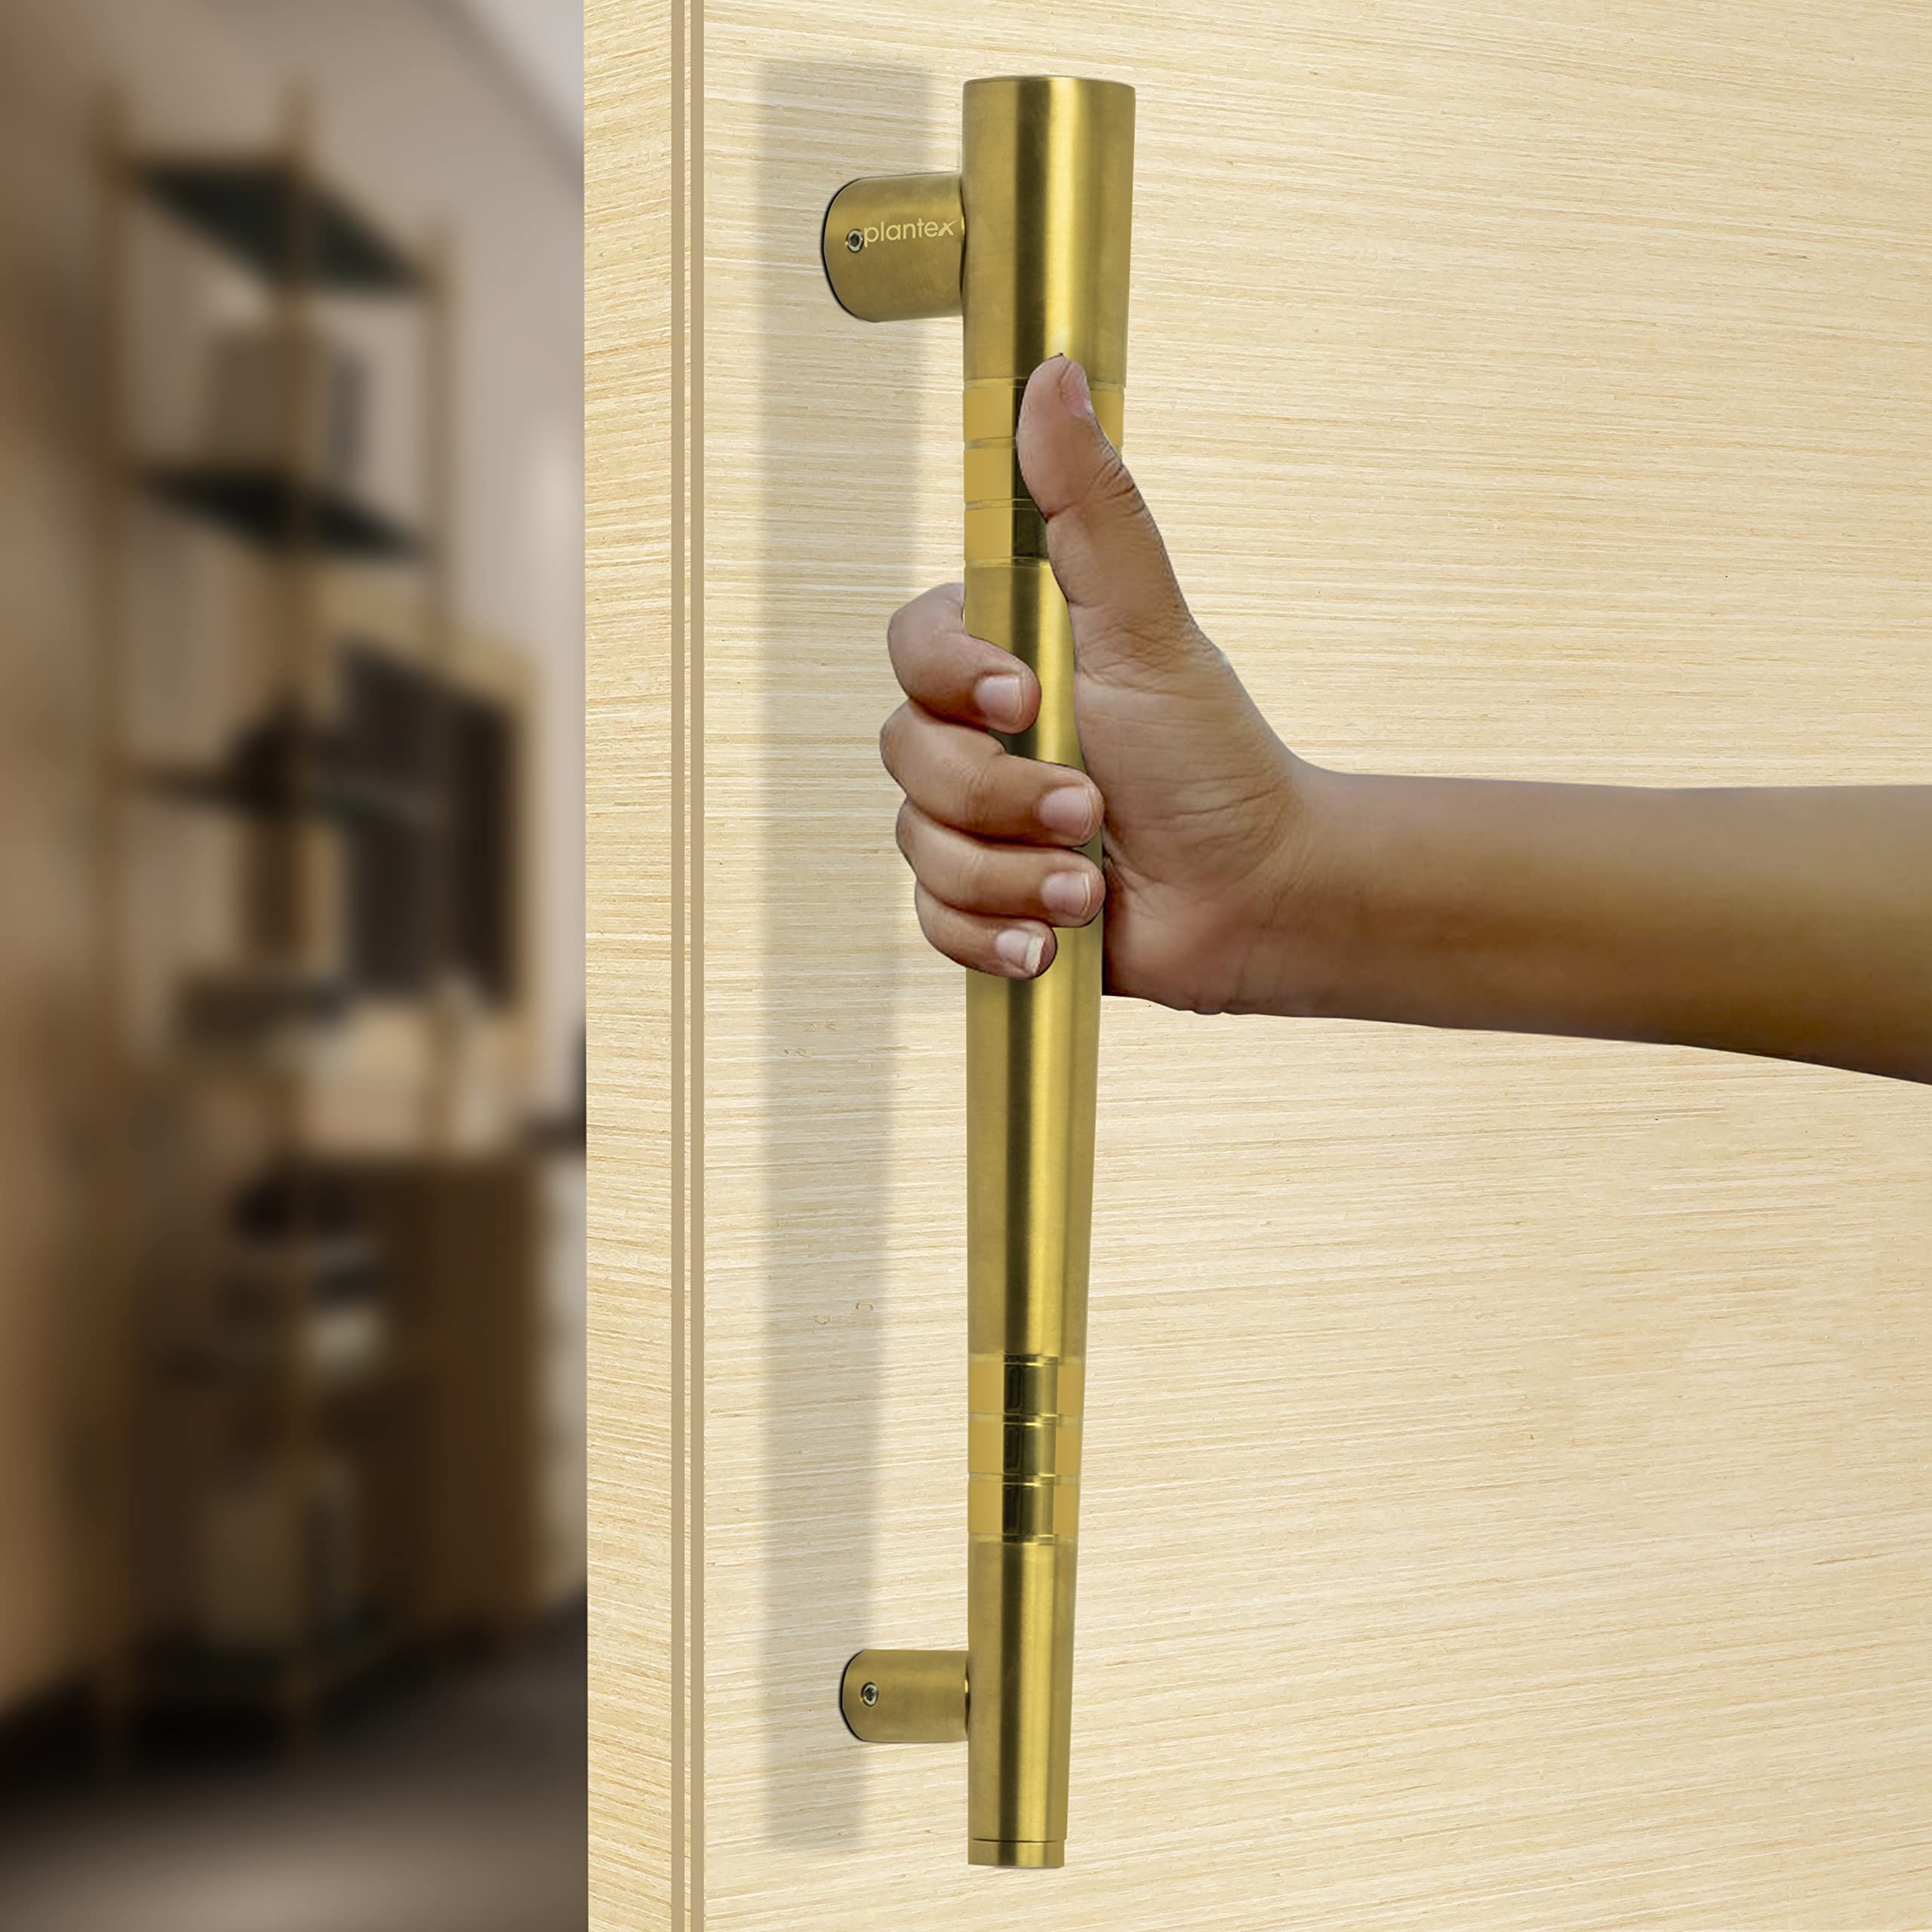 Plantex Door Handle/Door & Home Decor/14 Inch Main Door Handle